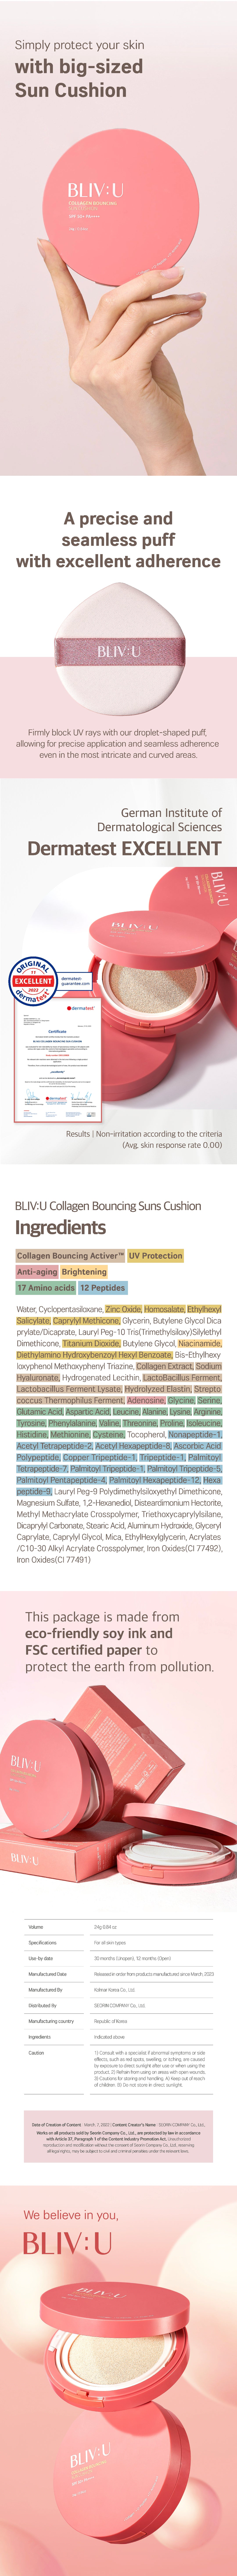 Bliv:u collagen bouncing sun cushion description3